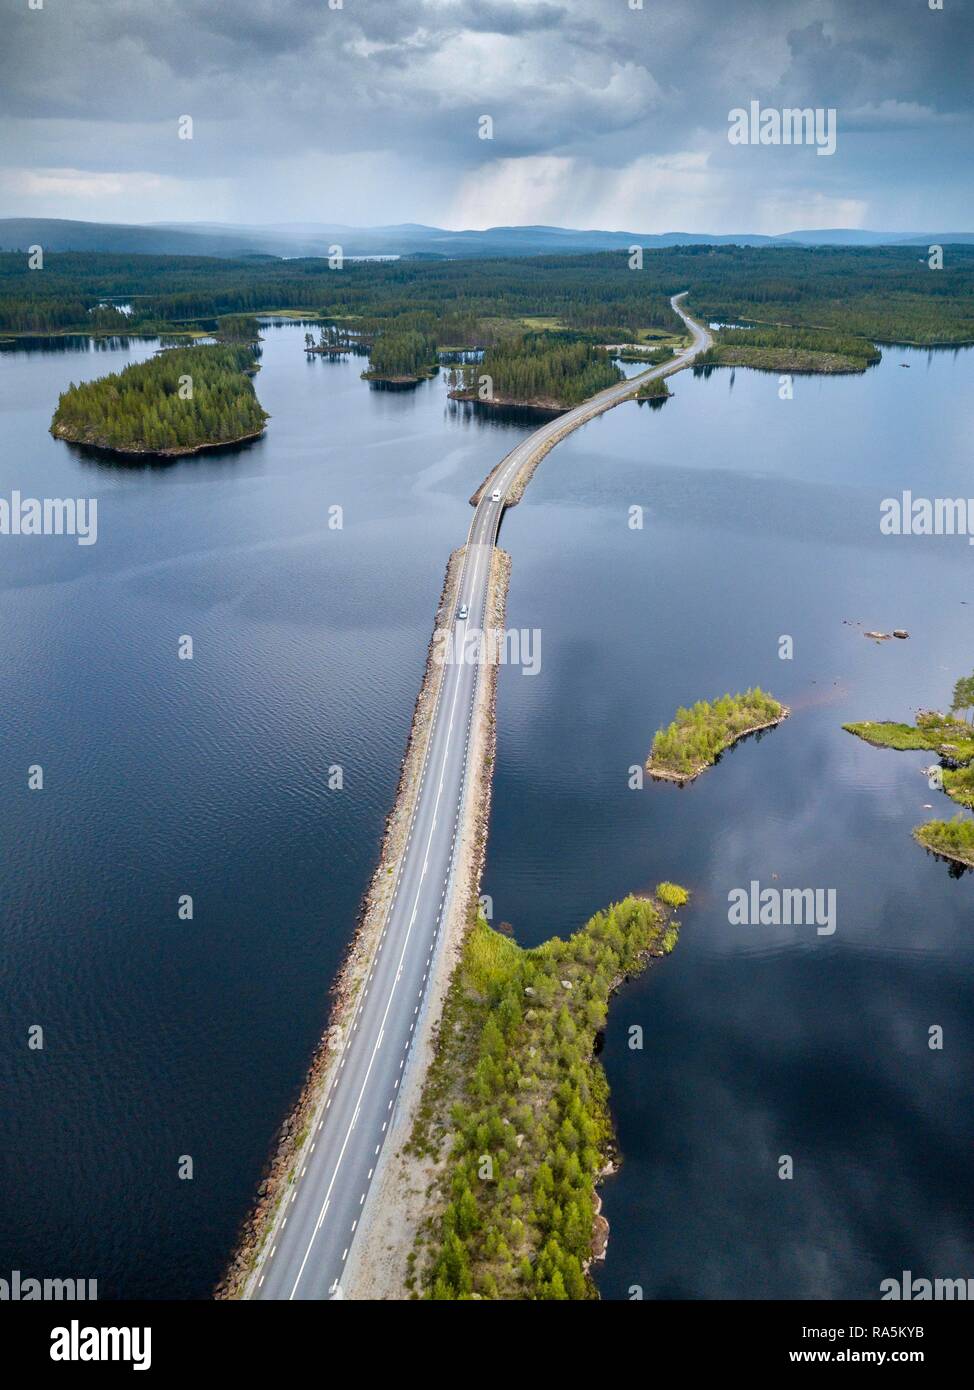 Drohnen geschossen, kurvenreiche Straße führt durch Seenlandschaft, boreal, Arktis Koniferen auf kleinen Inseln, Frederika, Västerbottens län Stockfoto